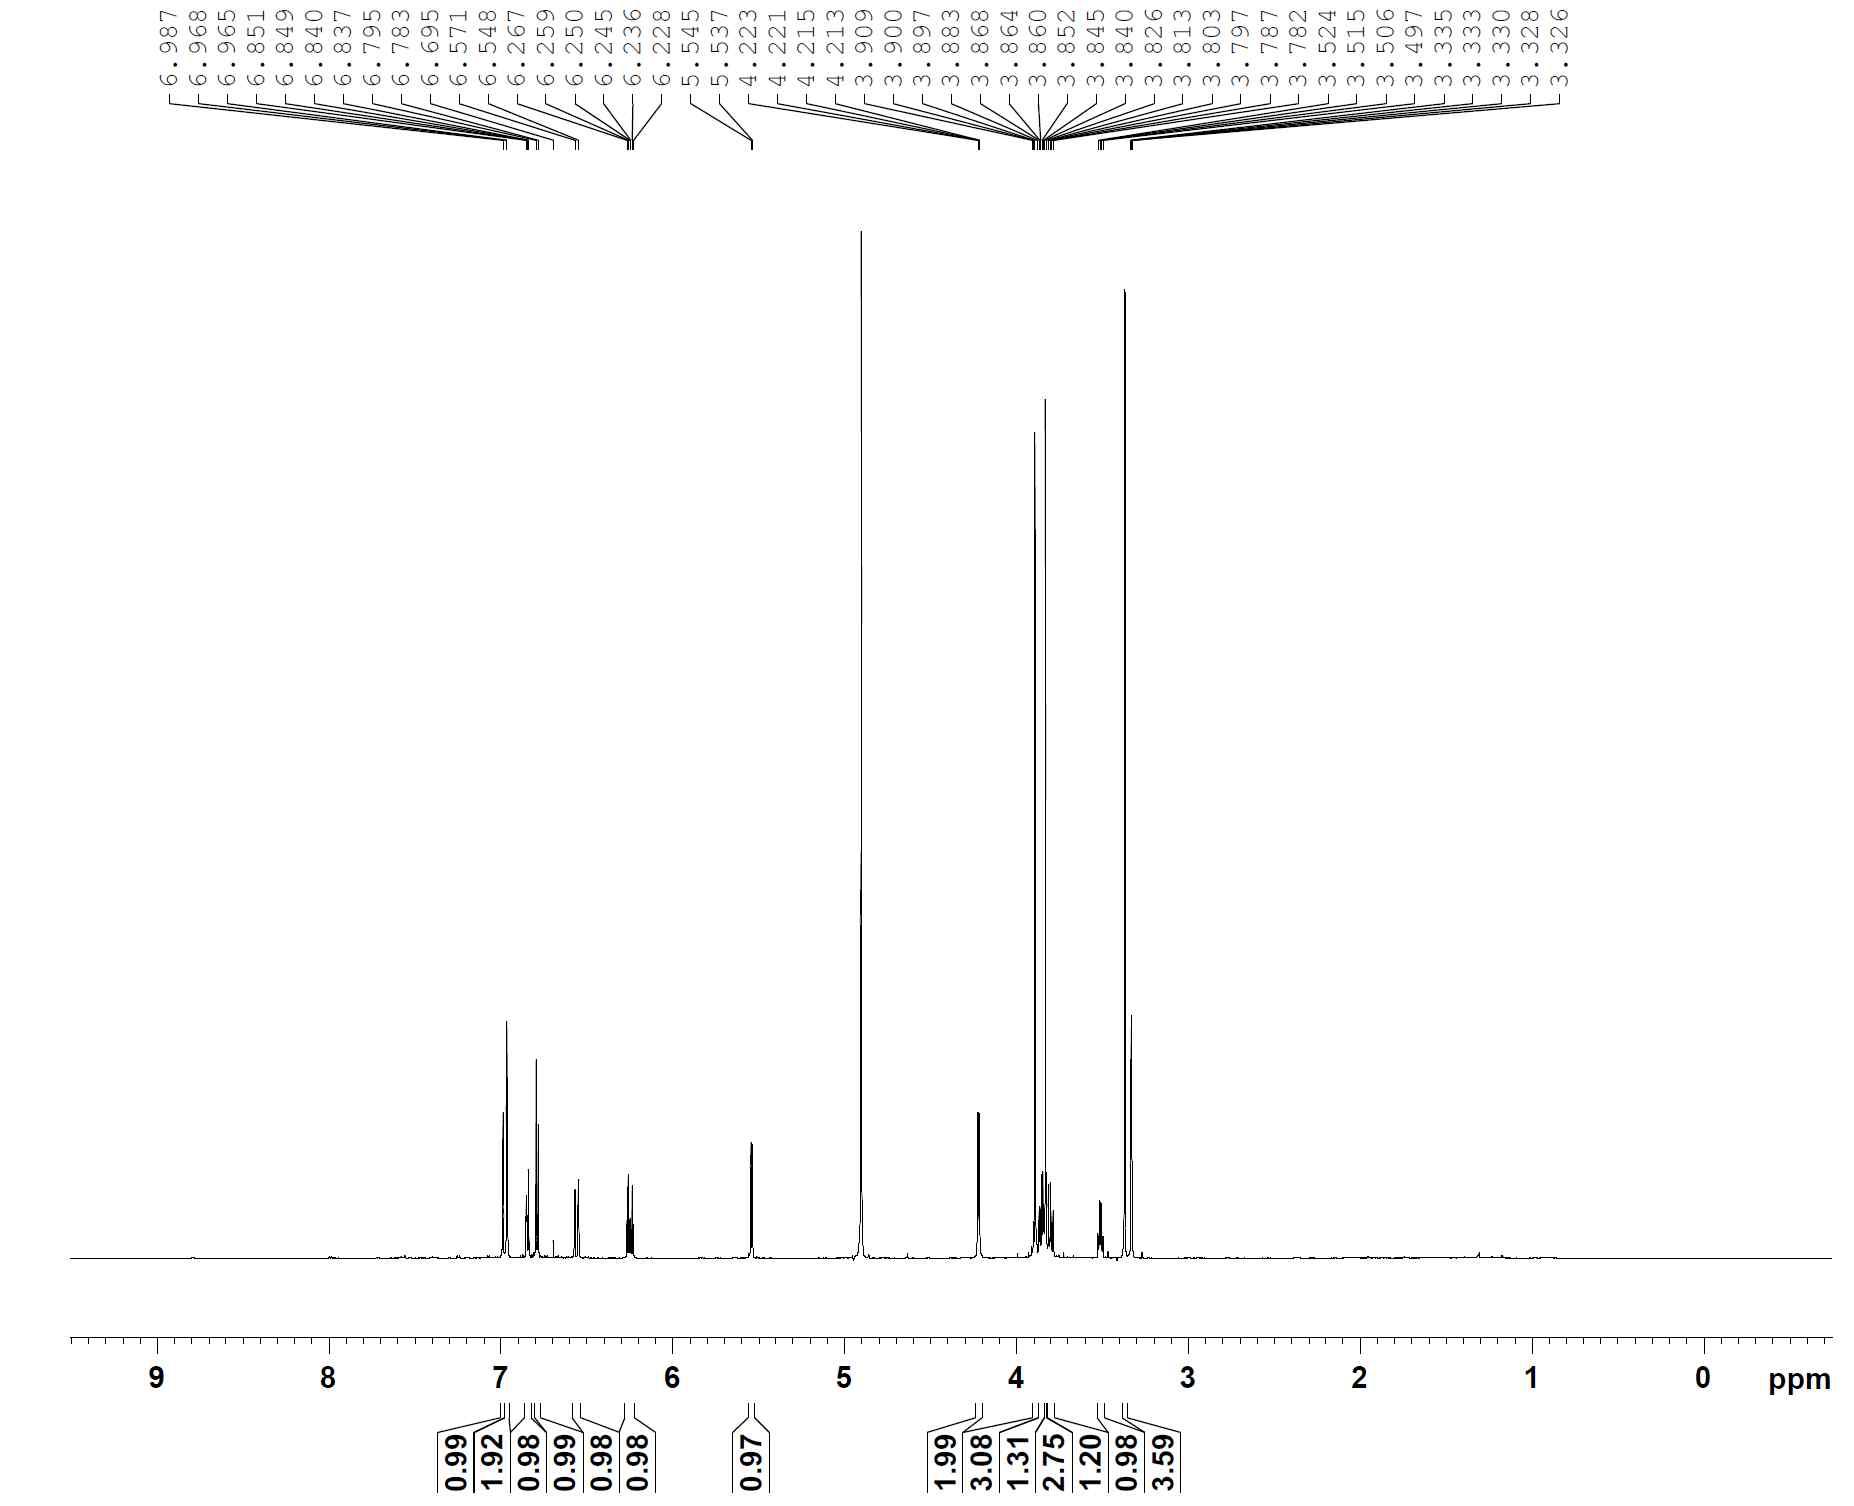 1H-NMR spectrum of compound 7